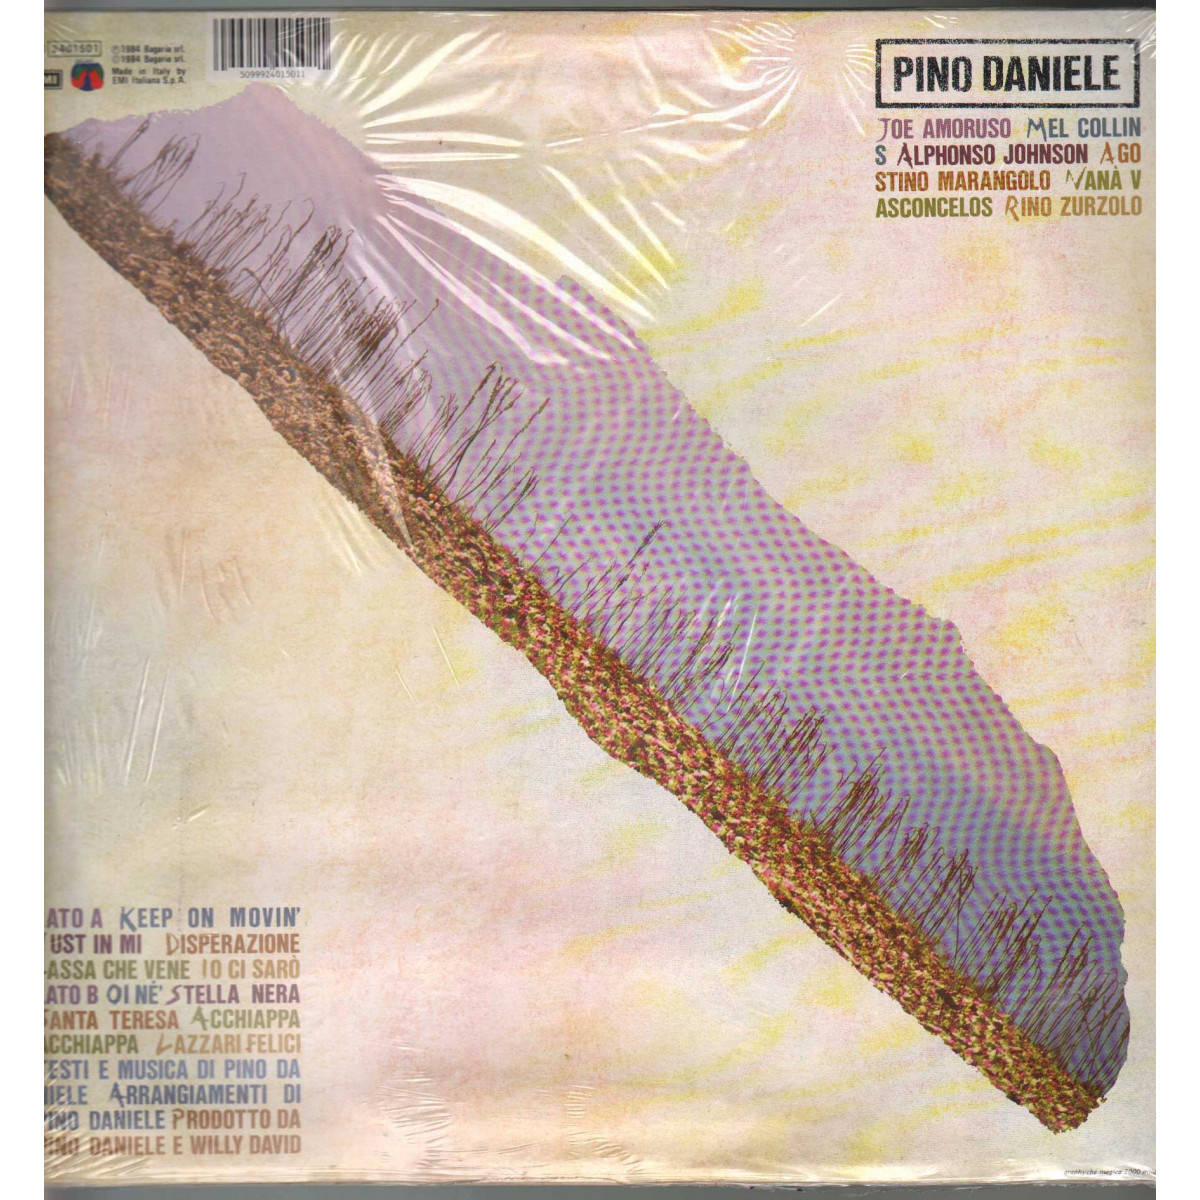 Pino Daniele Lp Vinile Musicante / EMI Bagaria 66 2401501 Sigillato